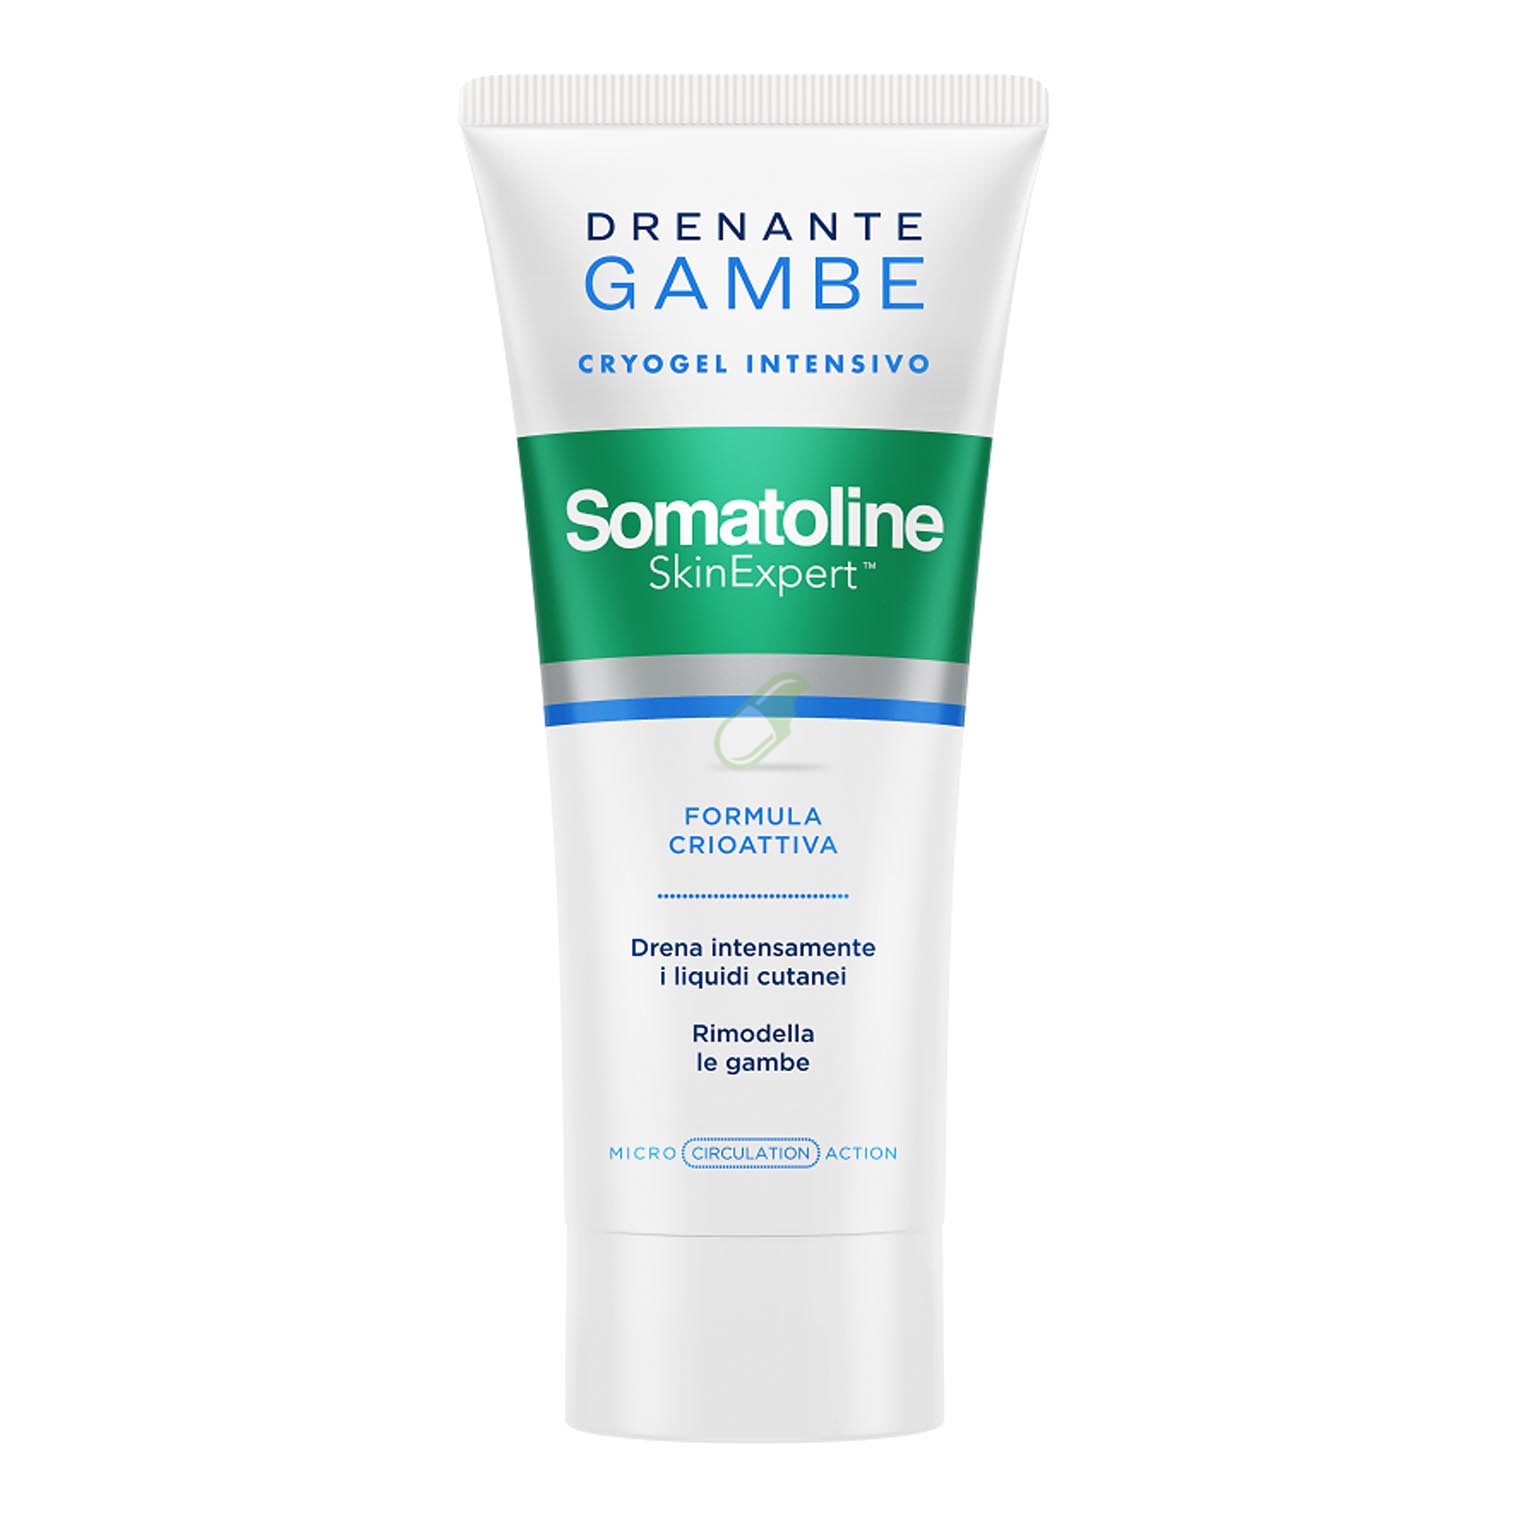 Somatoline Skin Expert Linea Snellenti Trattamento Drenante Gambe 200 ml